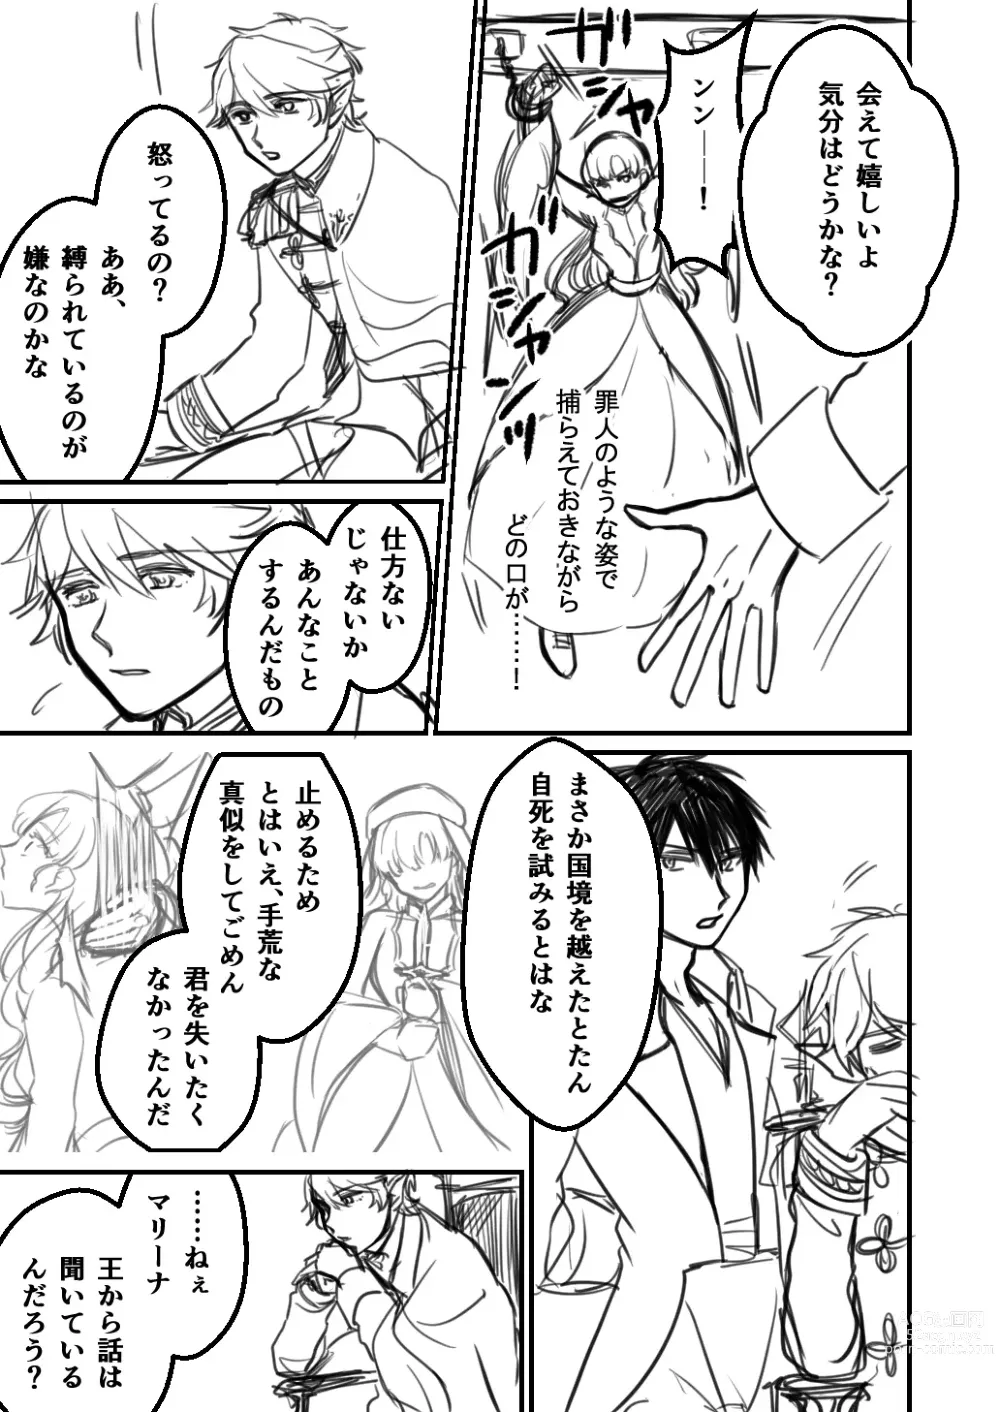 Page 7 of doujinshi Inma no Hanayome ni Naru Seijo no Hanashi